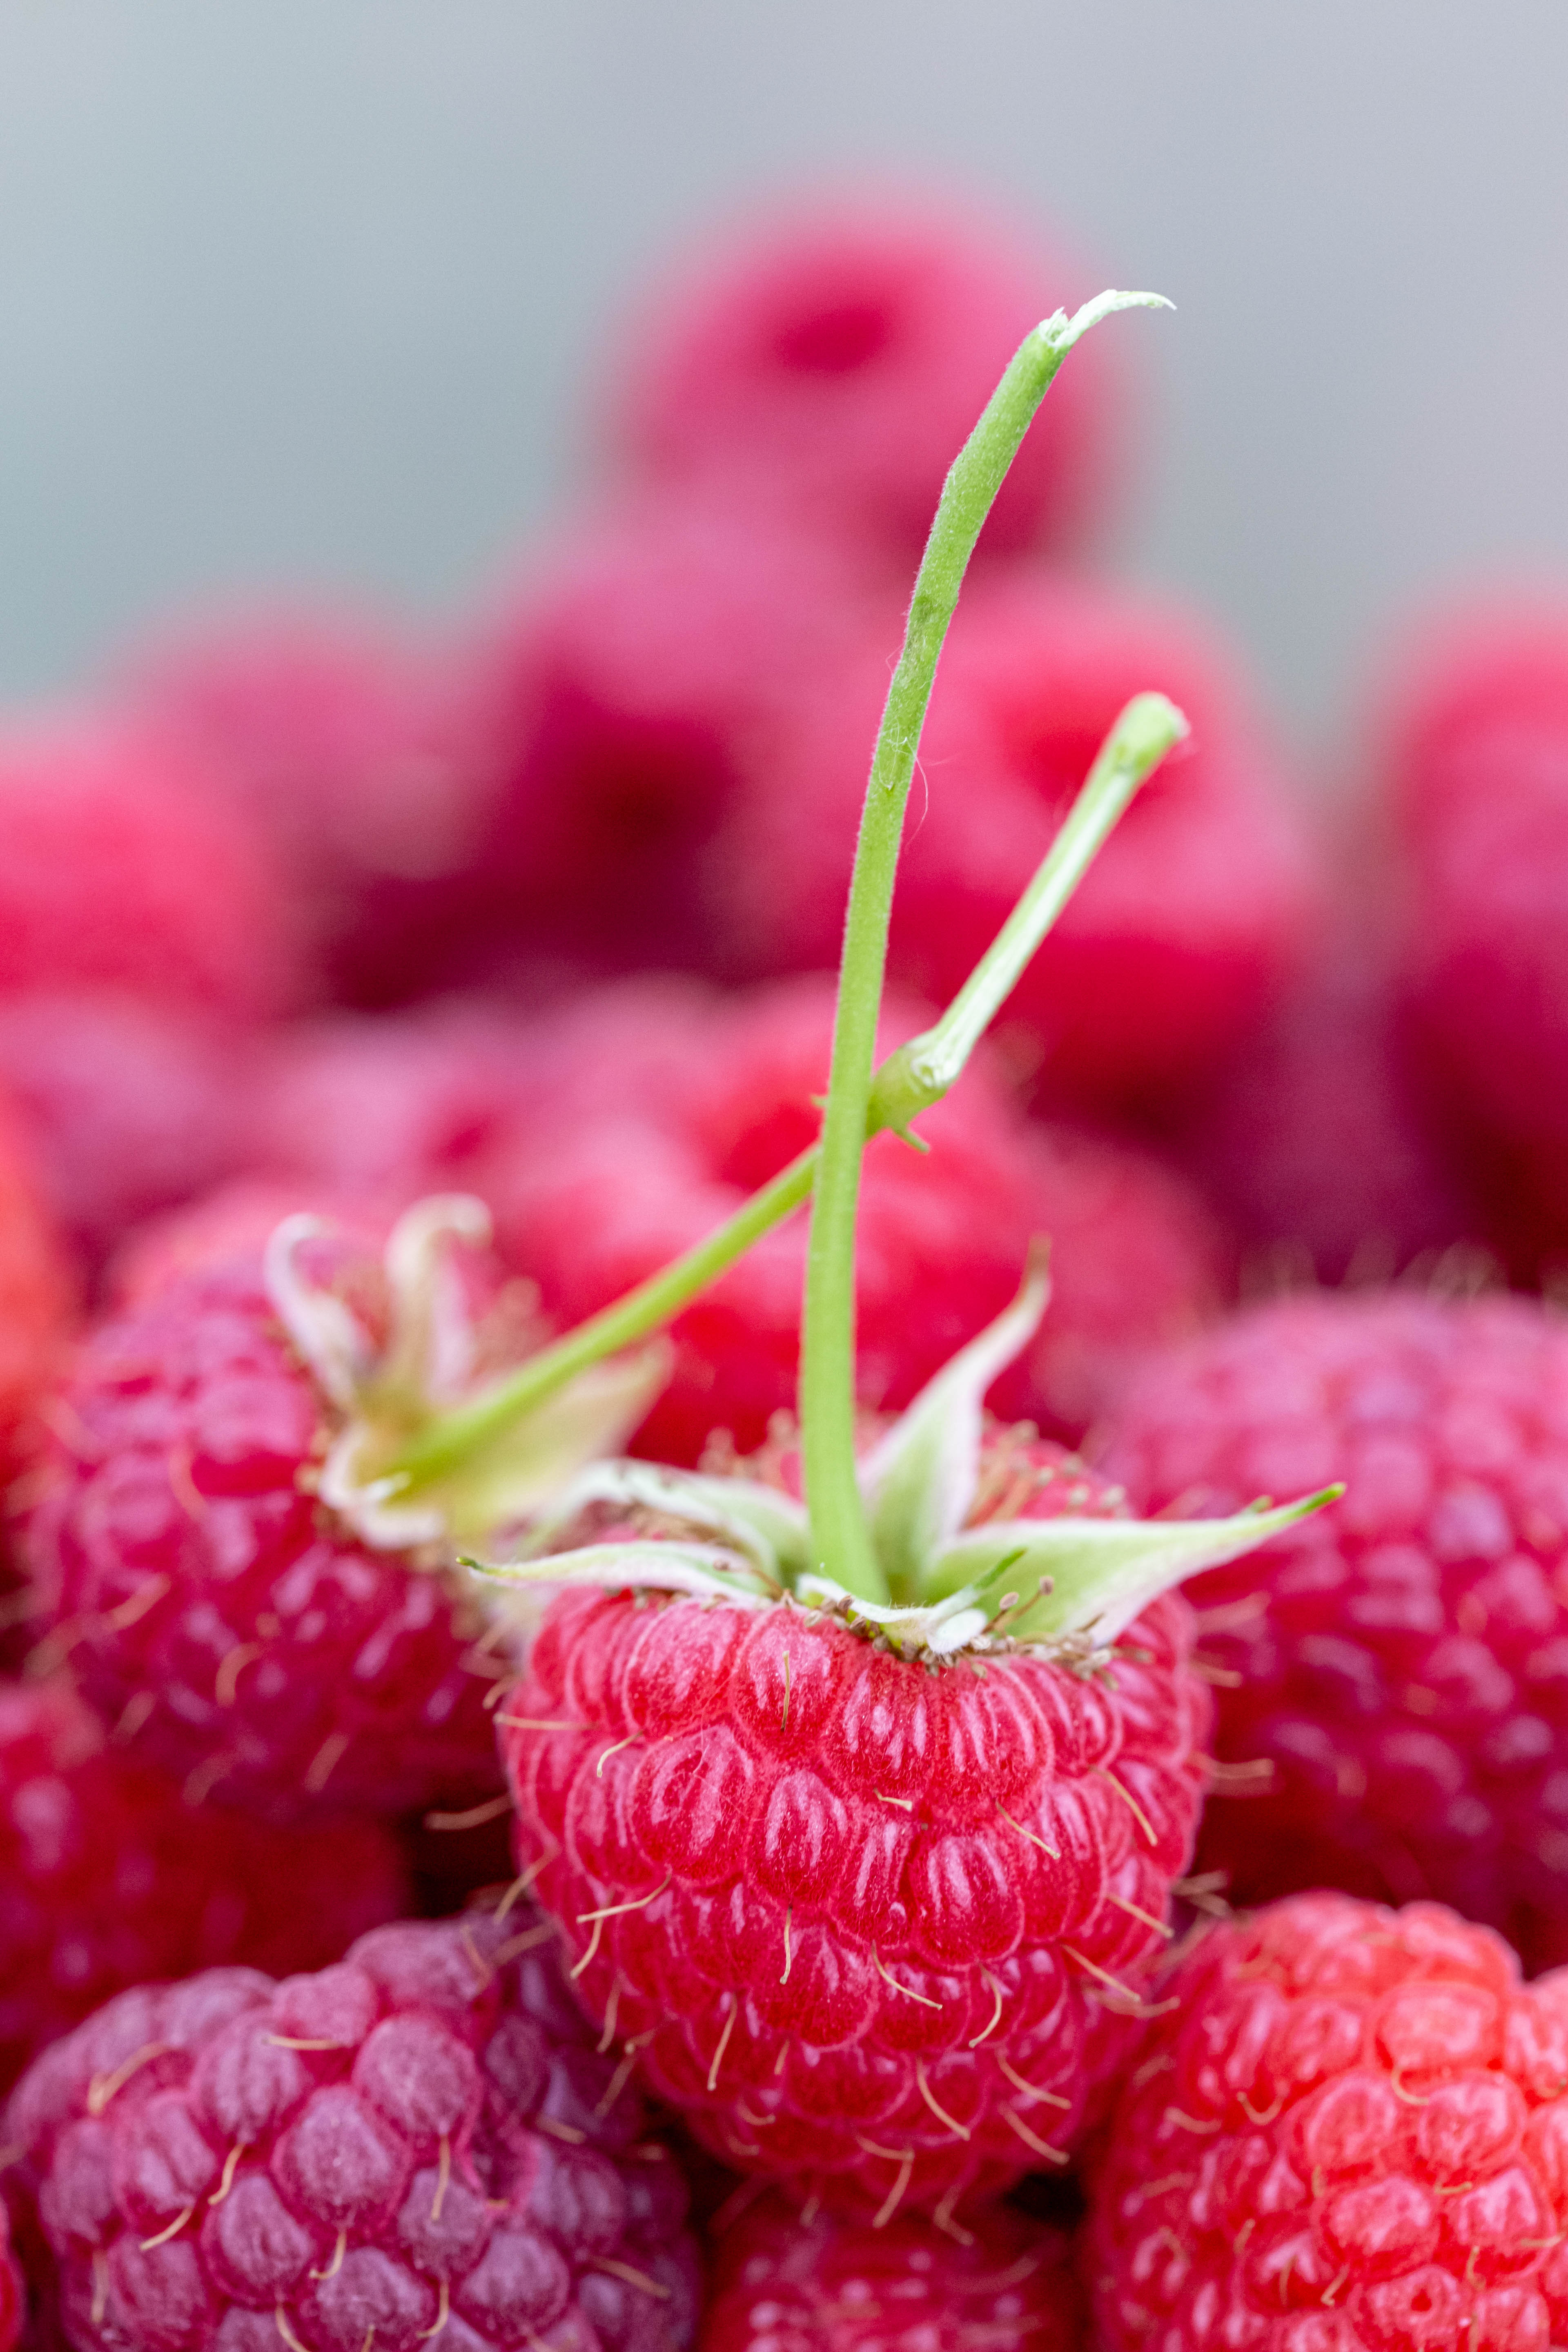 food, raspberry, berries, close-up, ripe, juicy